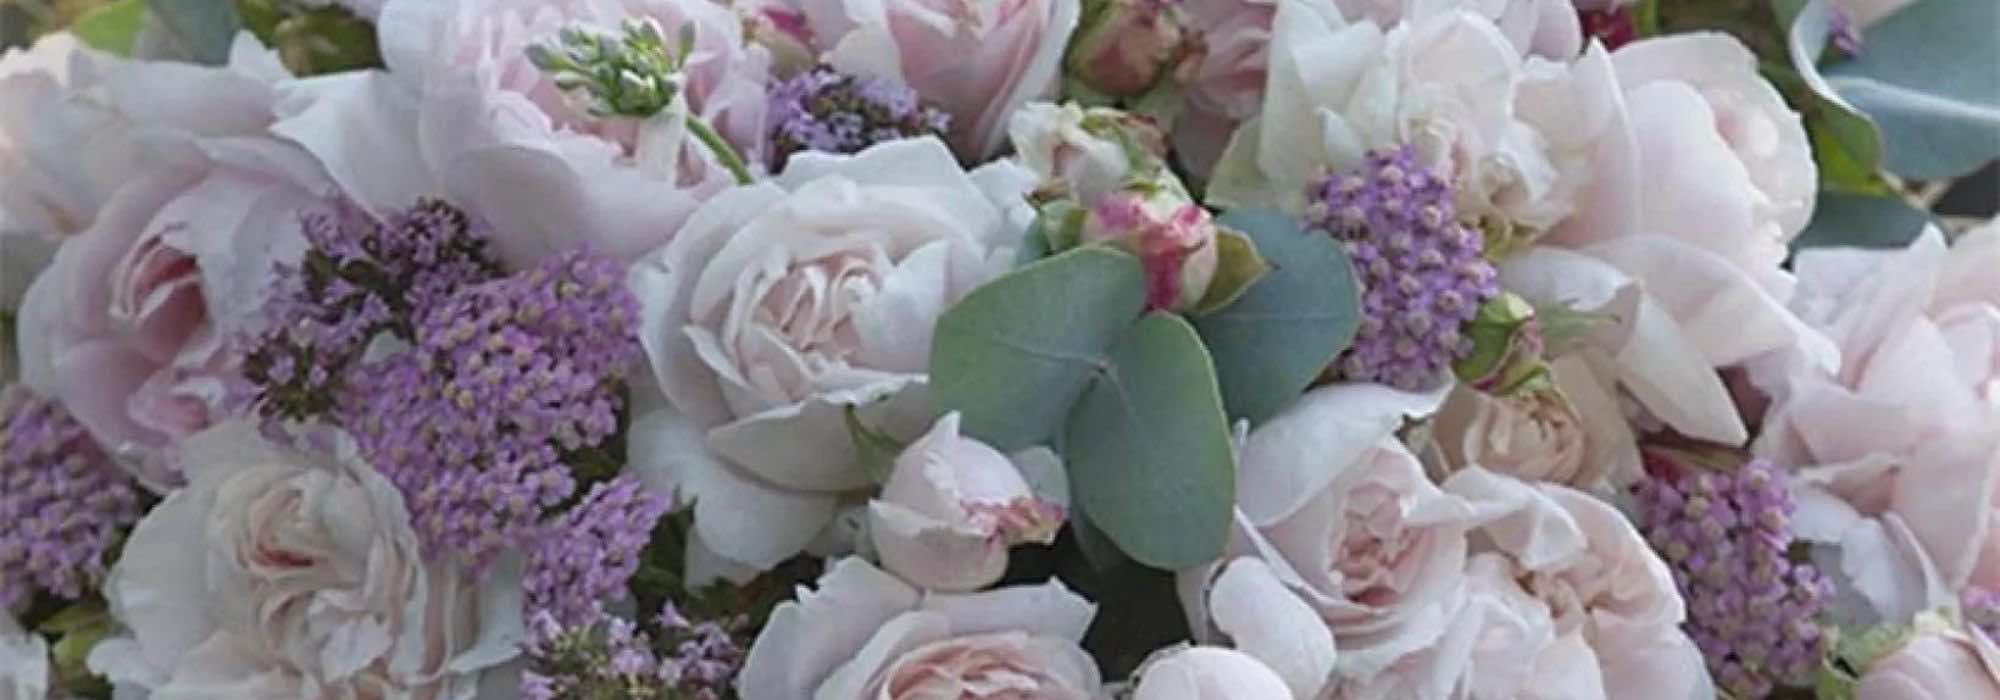 Les meilleurs rosiers pour des bouquets enchanteurs et parfumés